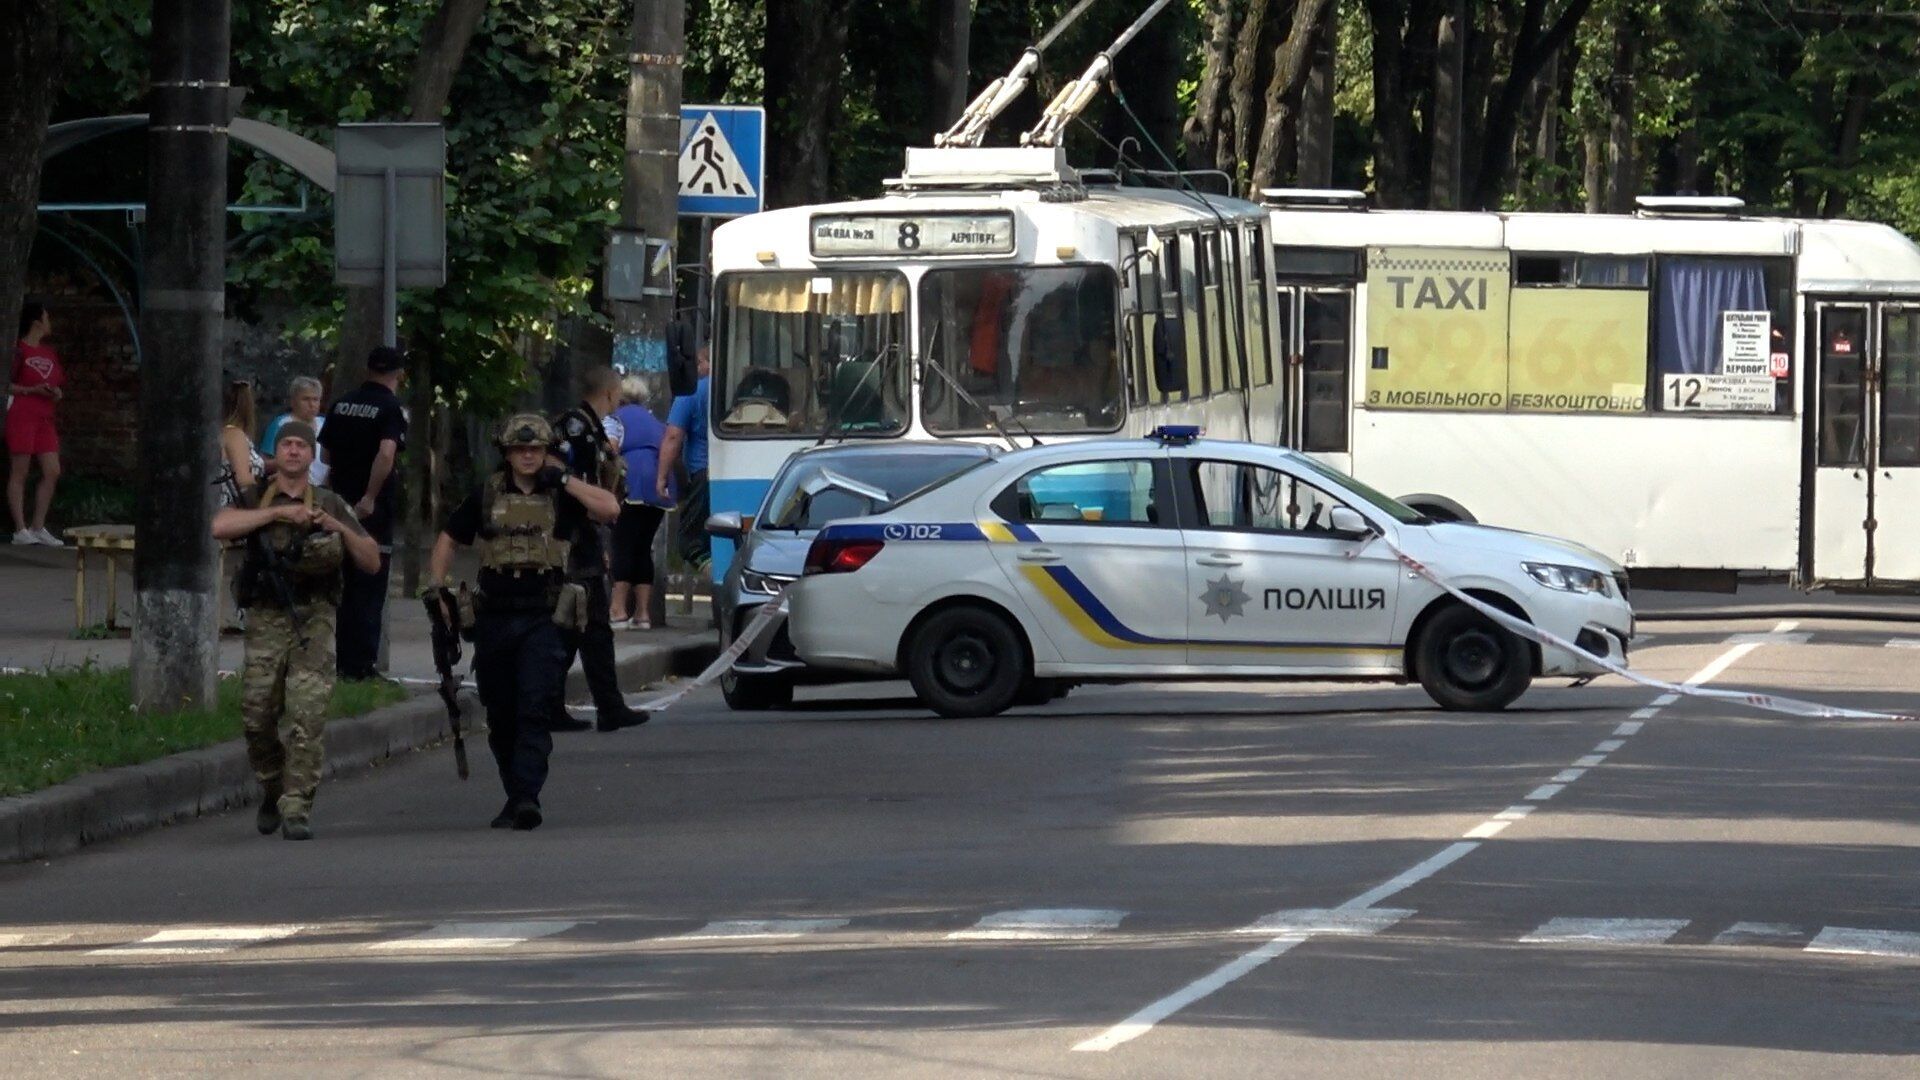 В Сумах мужчина открыл стрельбу, движение транспорта на улице остановили – СМИ